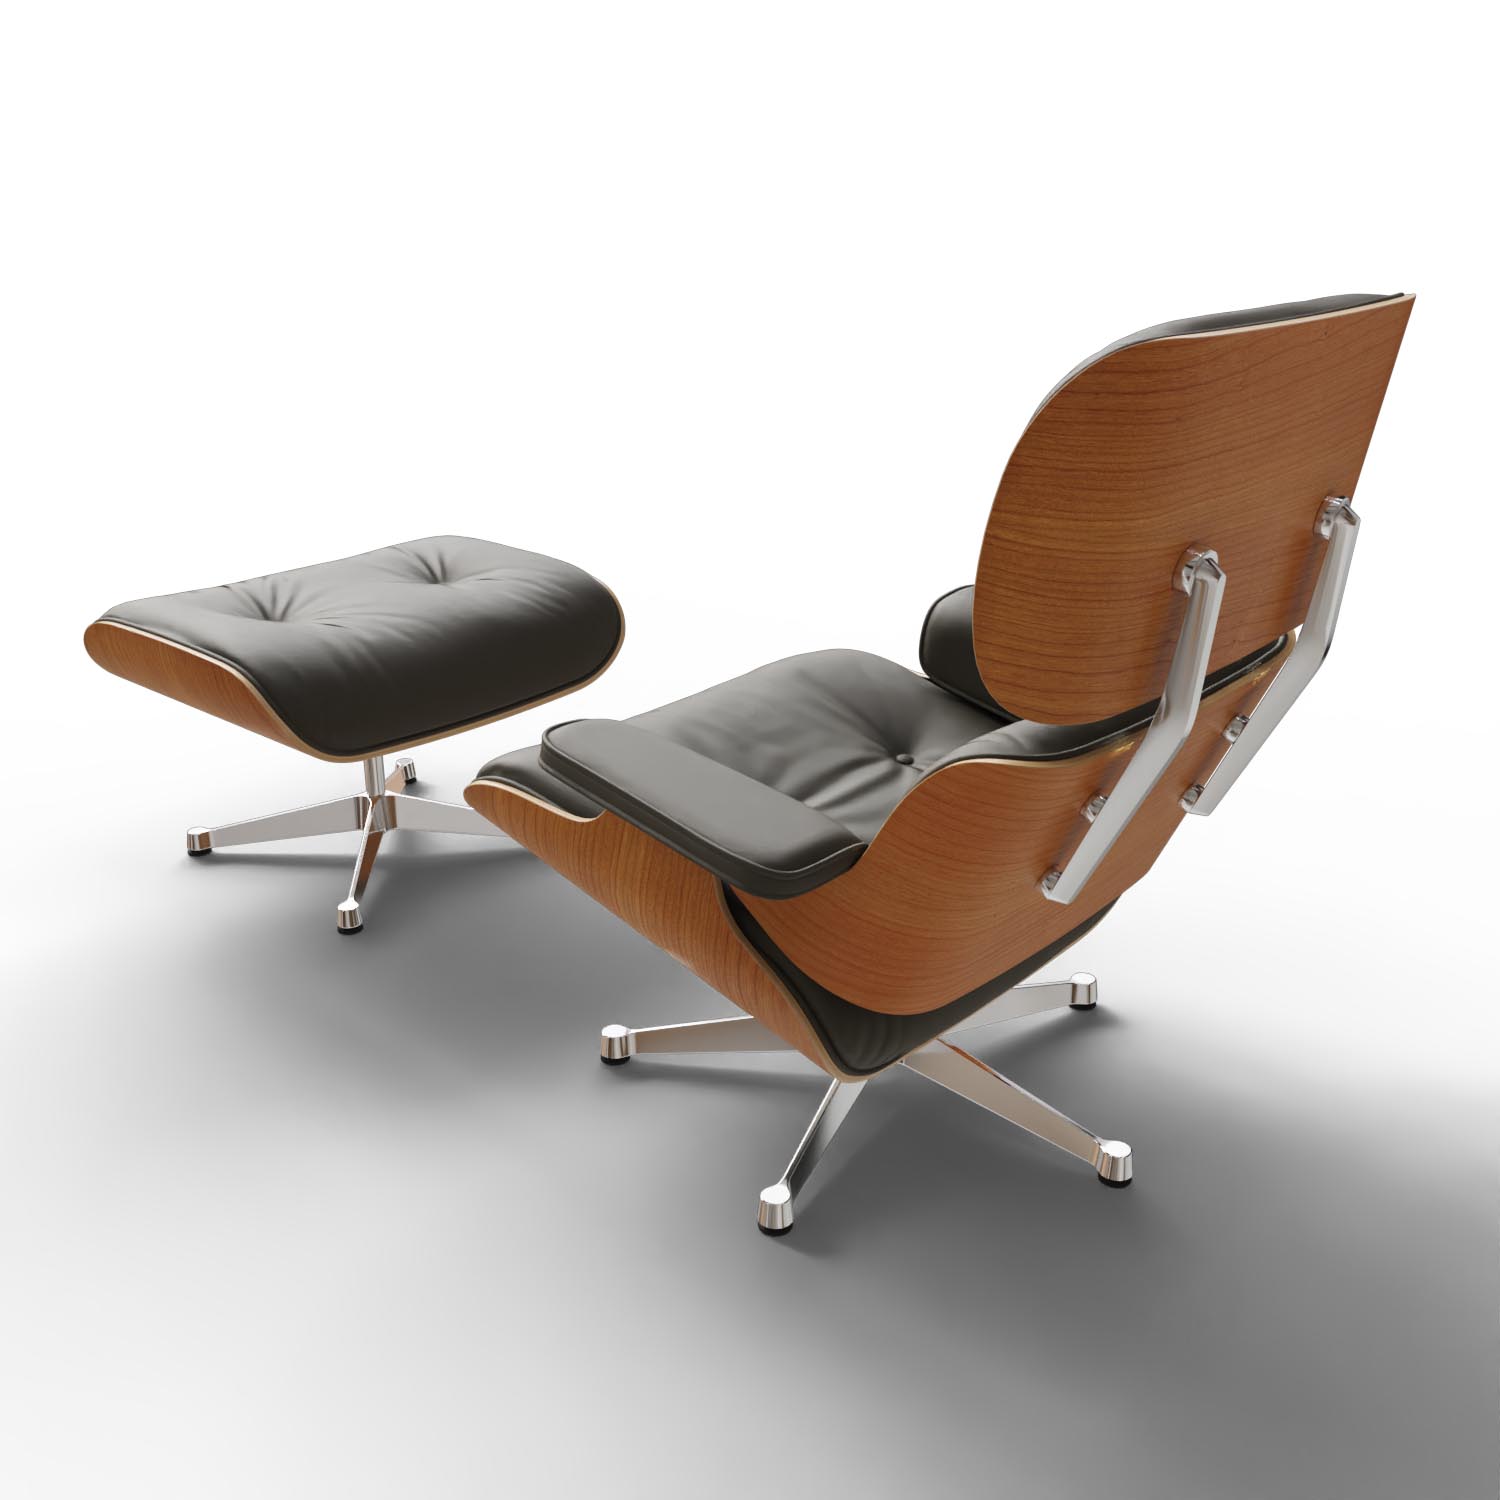 Lounge Chair und Ottoman 41213300 Amerikanischer Kirschbaum Leder in Khaki